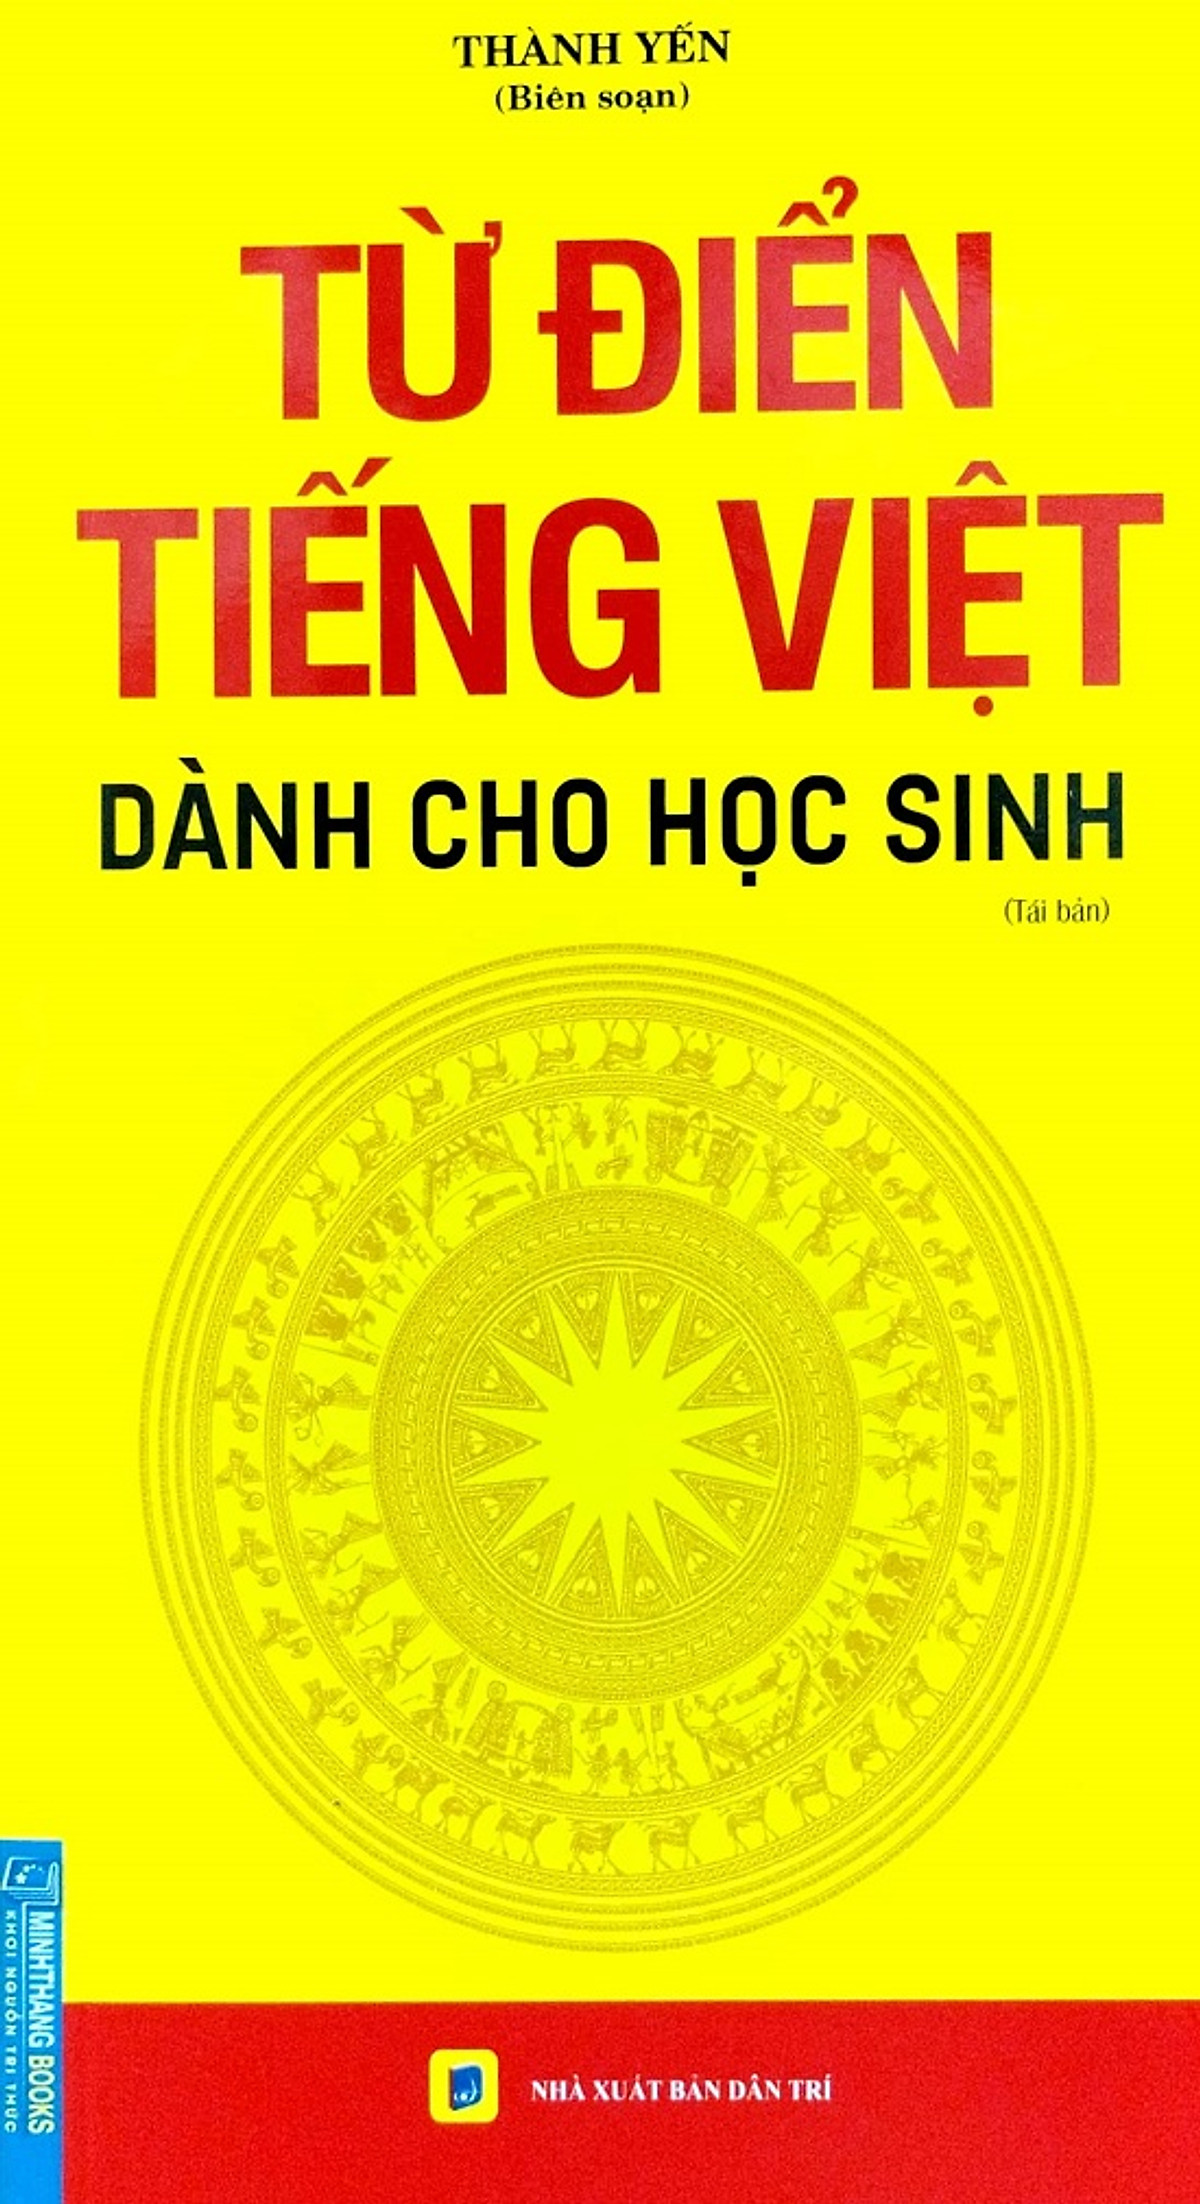 Combo Từ Điển Thành Ngữ Tục Ngữ (GS: Nguyễn Lân) + Từ điển Tiếng Việt Dành cho học sinh